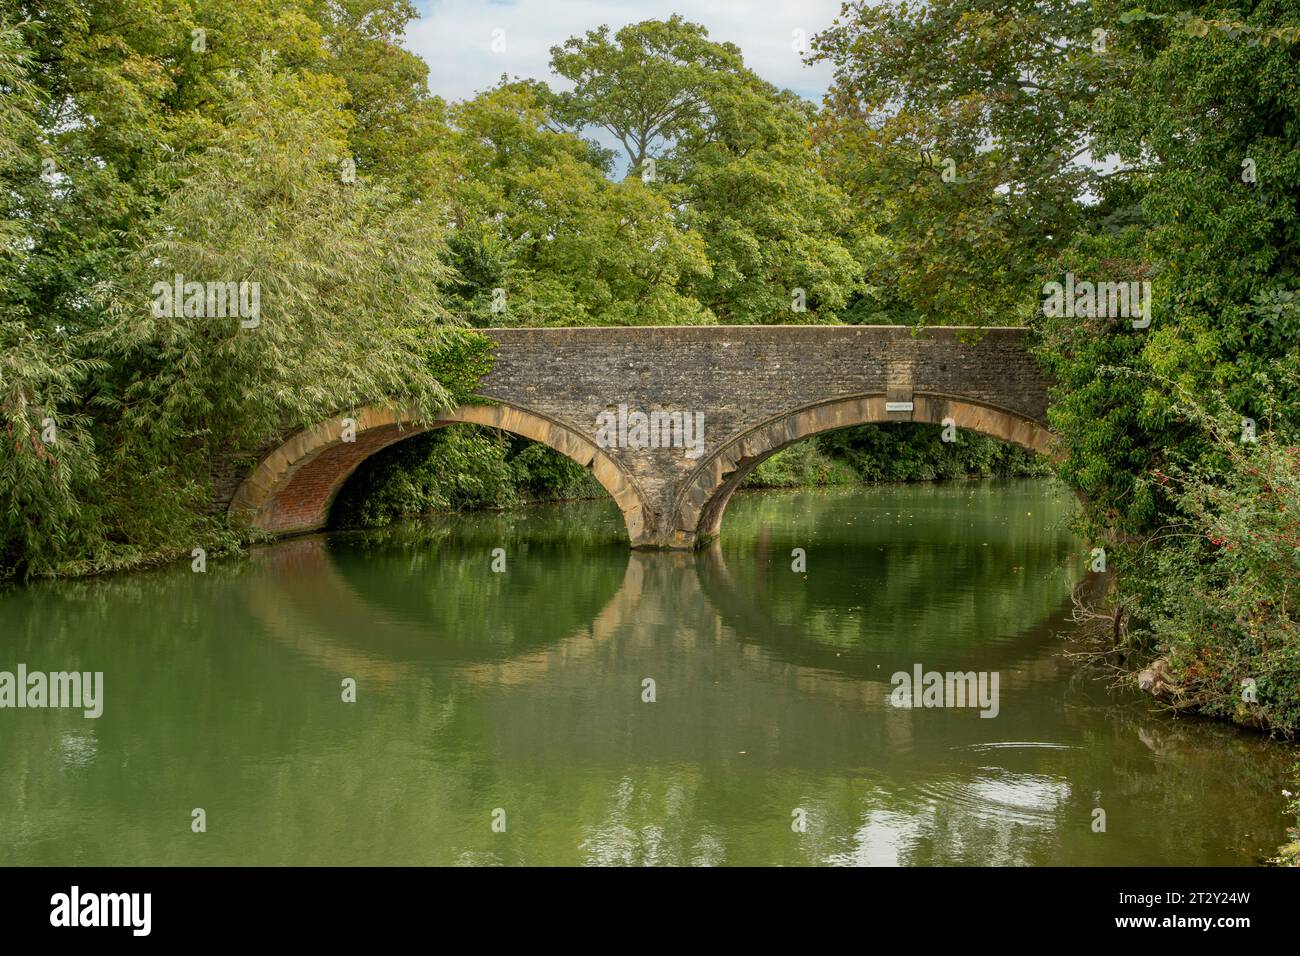 Pont sur la Tamise, Godstow, Oxfordshire, Angleterre Banque D'Images